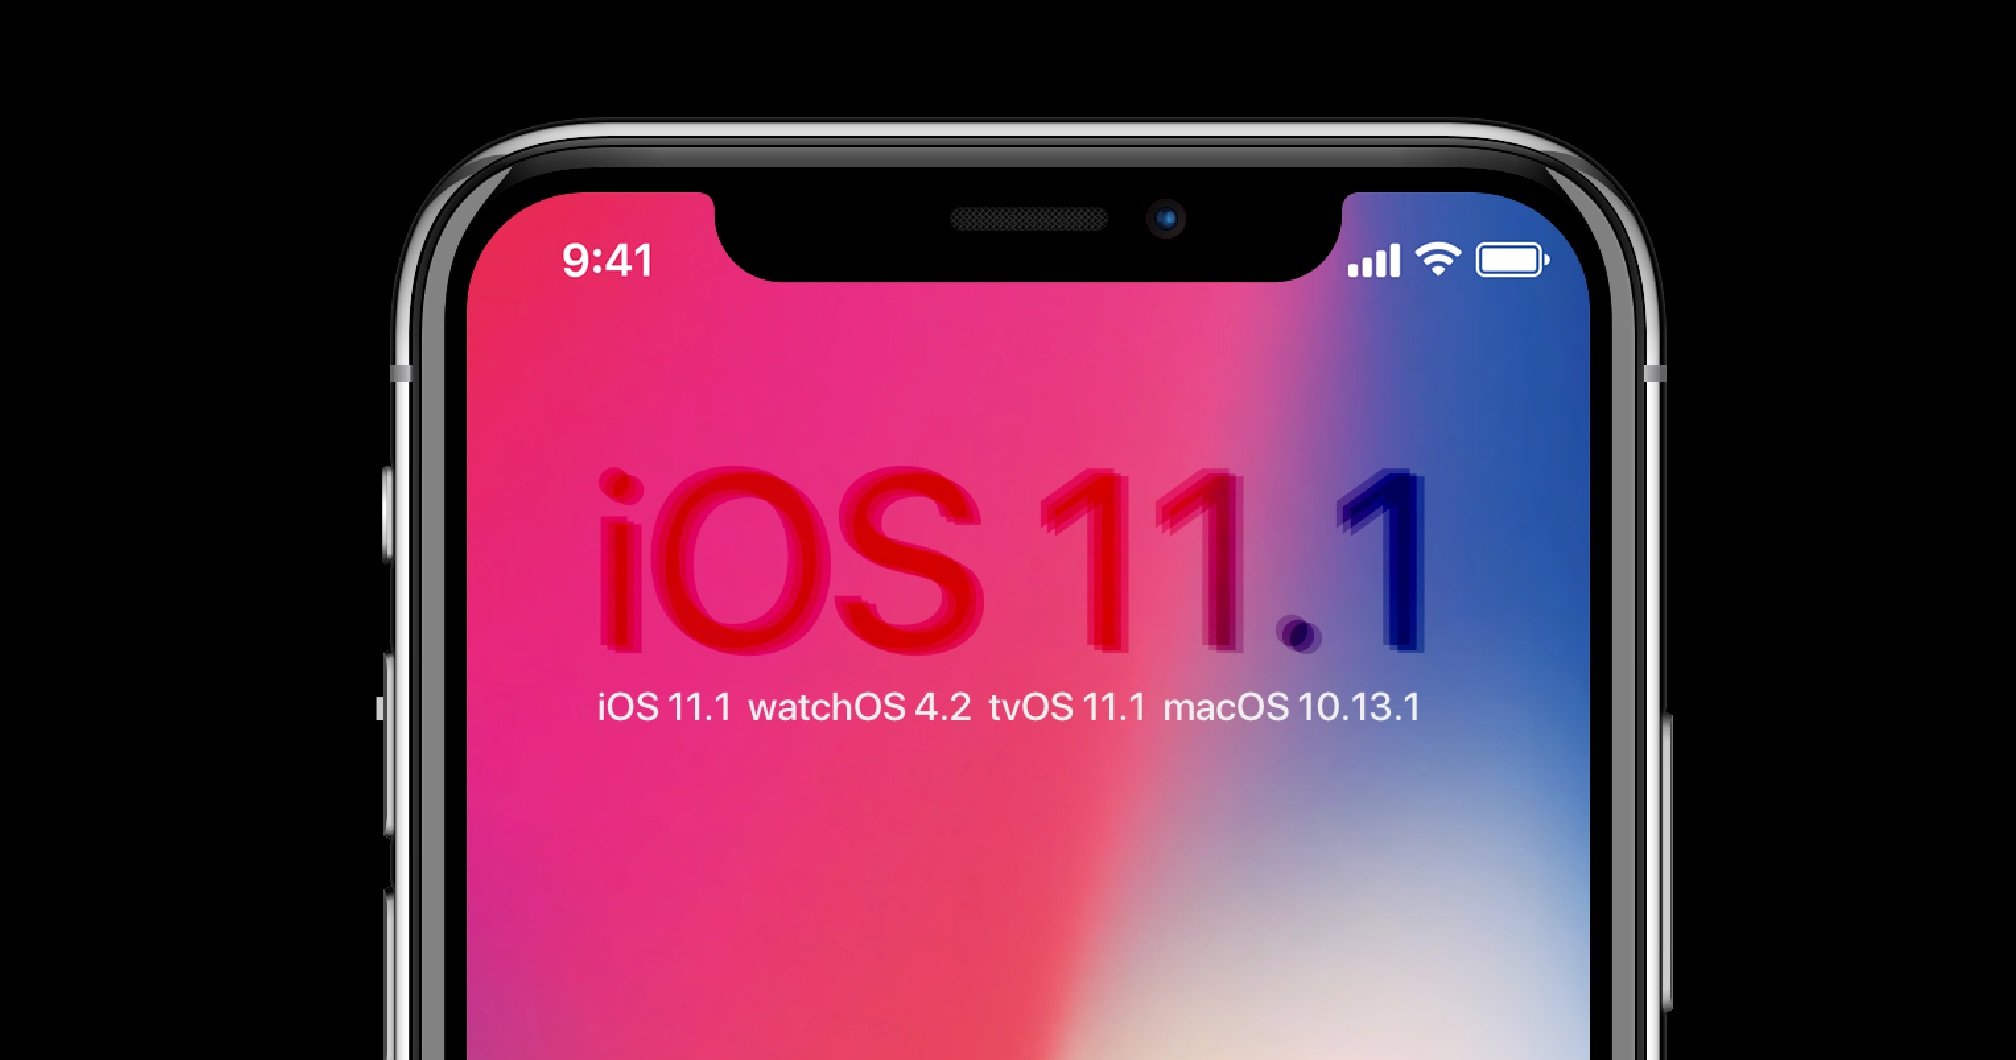 Update: iOS 11.1, watchOS 4.1, tvOS 11.1 & macOS High Sierra 10.13.1 1